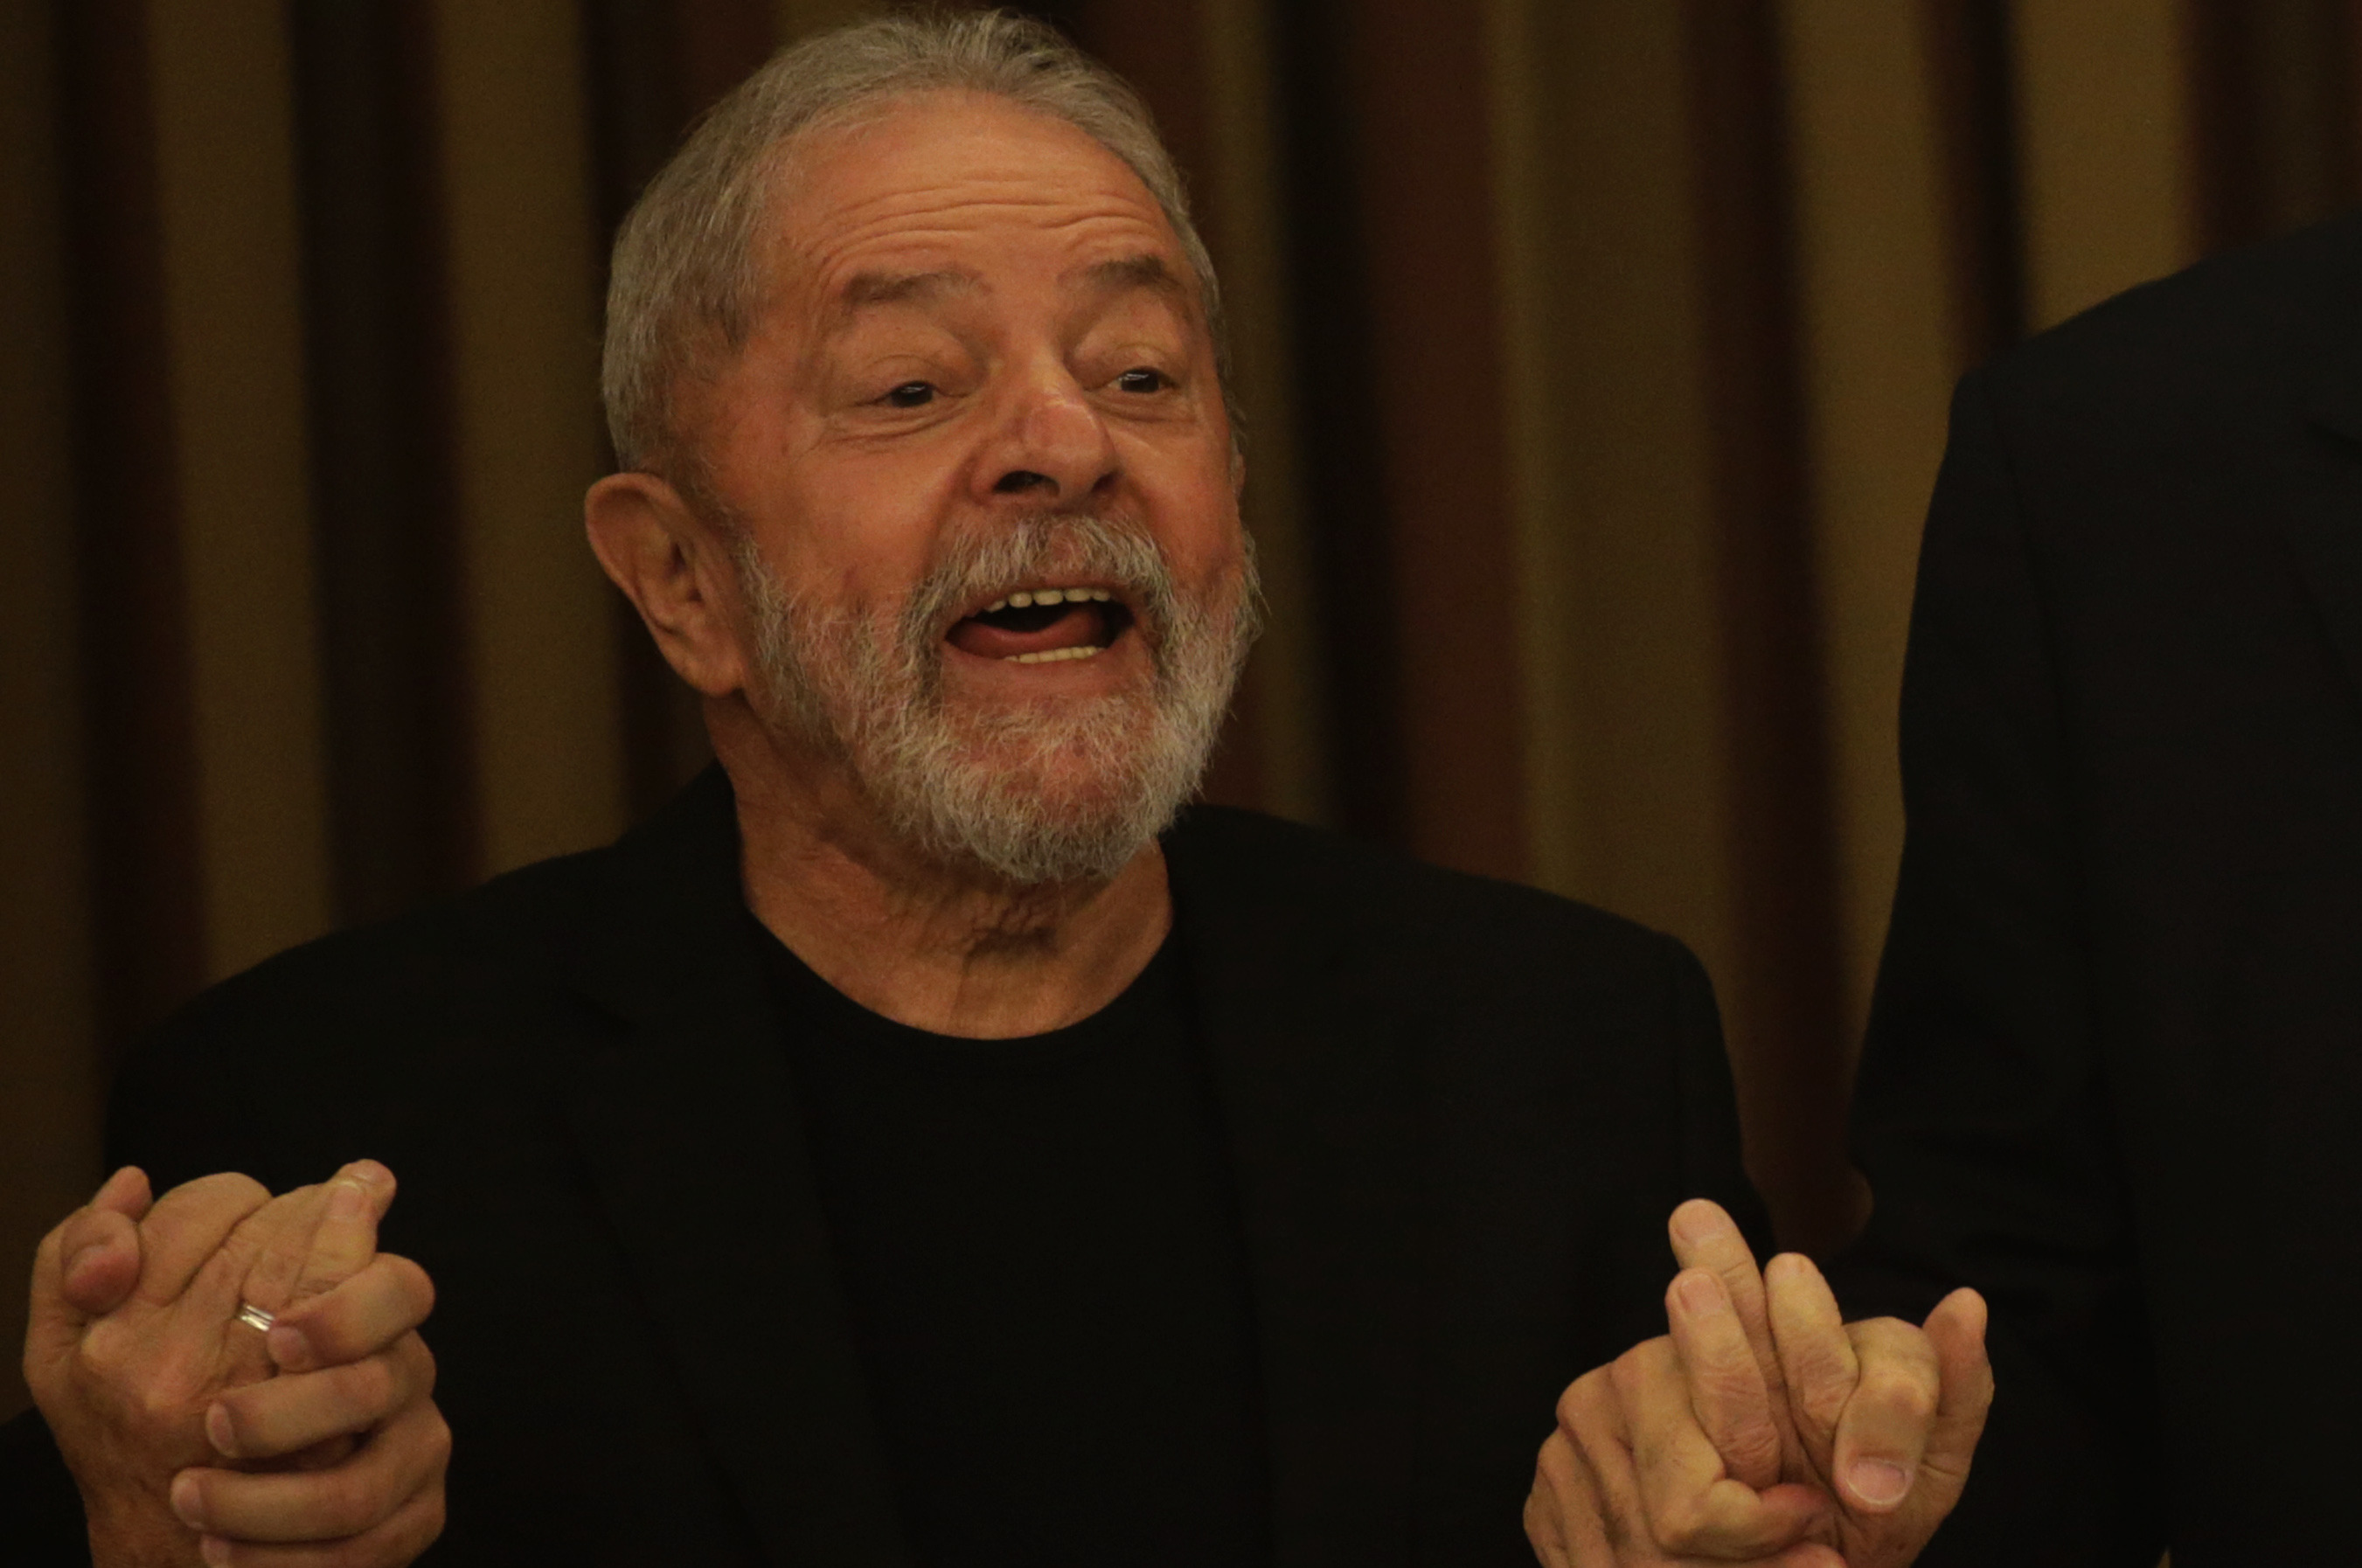 El expresidente brasileño Lula da Silva llama a pensar un mundo distinto cuando pase la pandemia de la Covid-19.